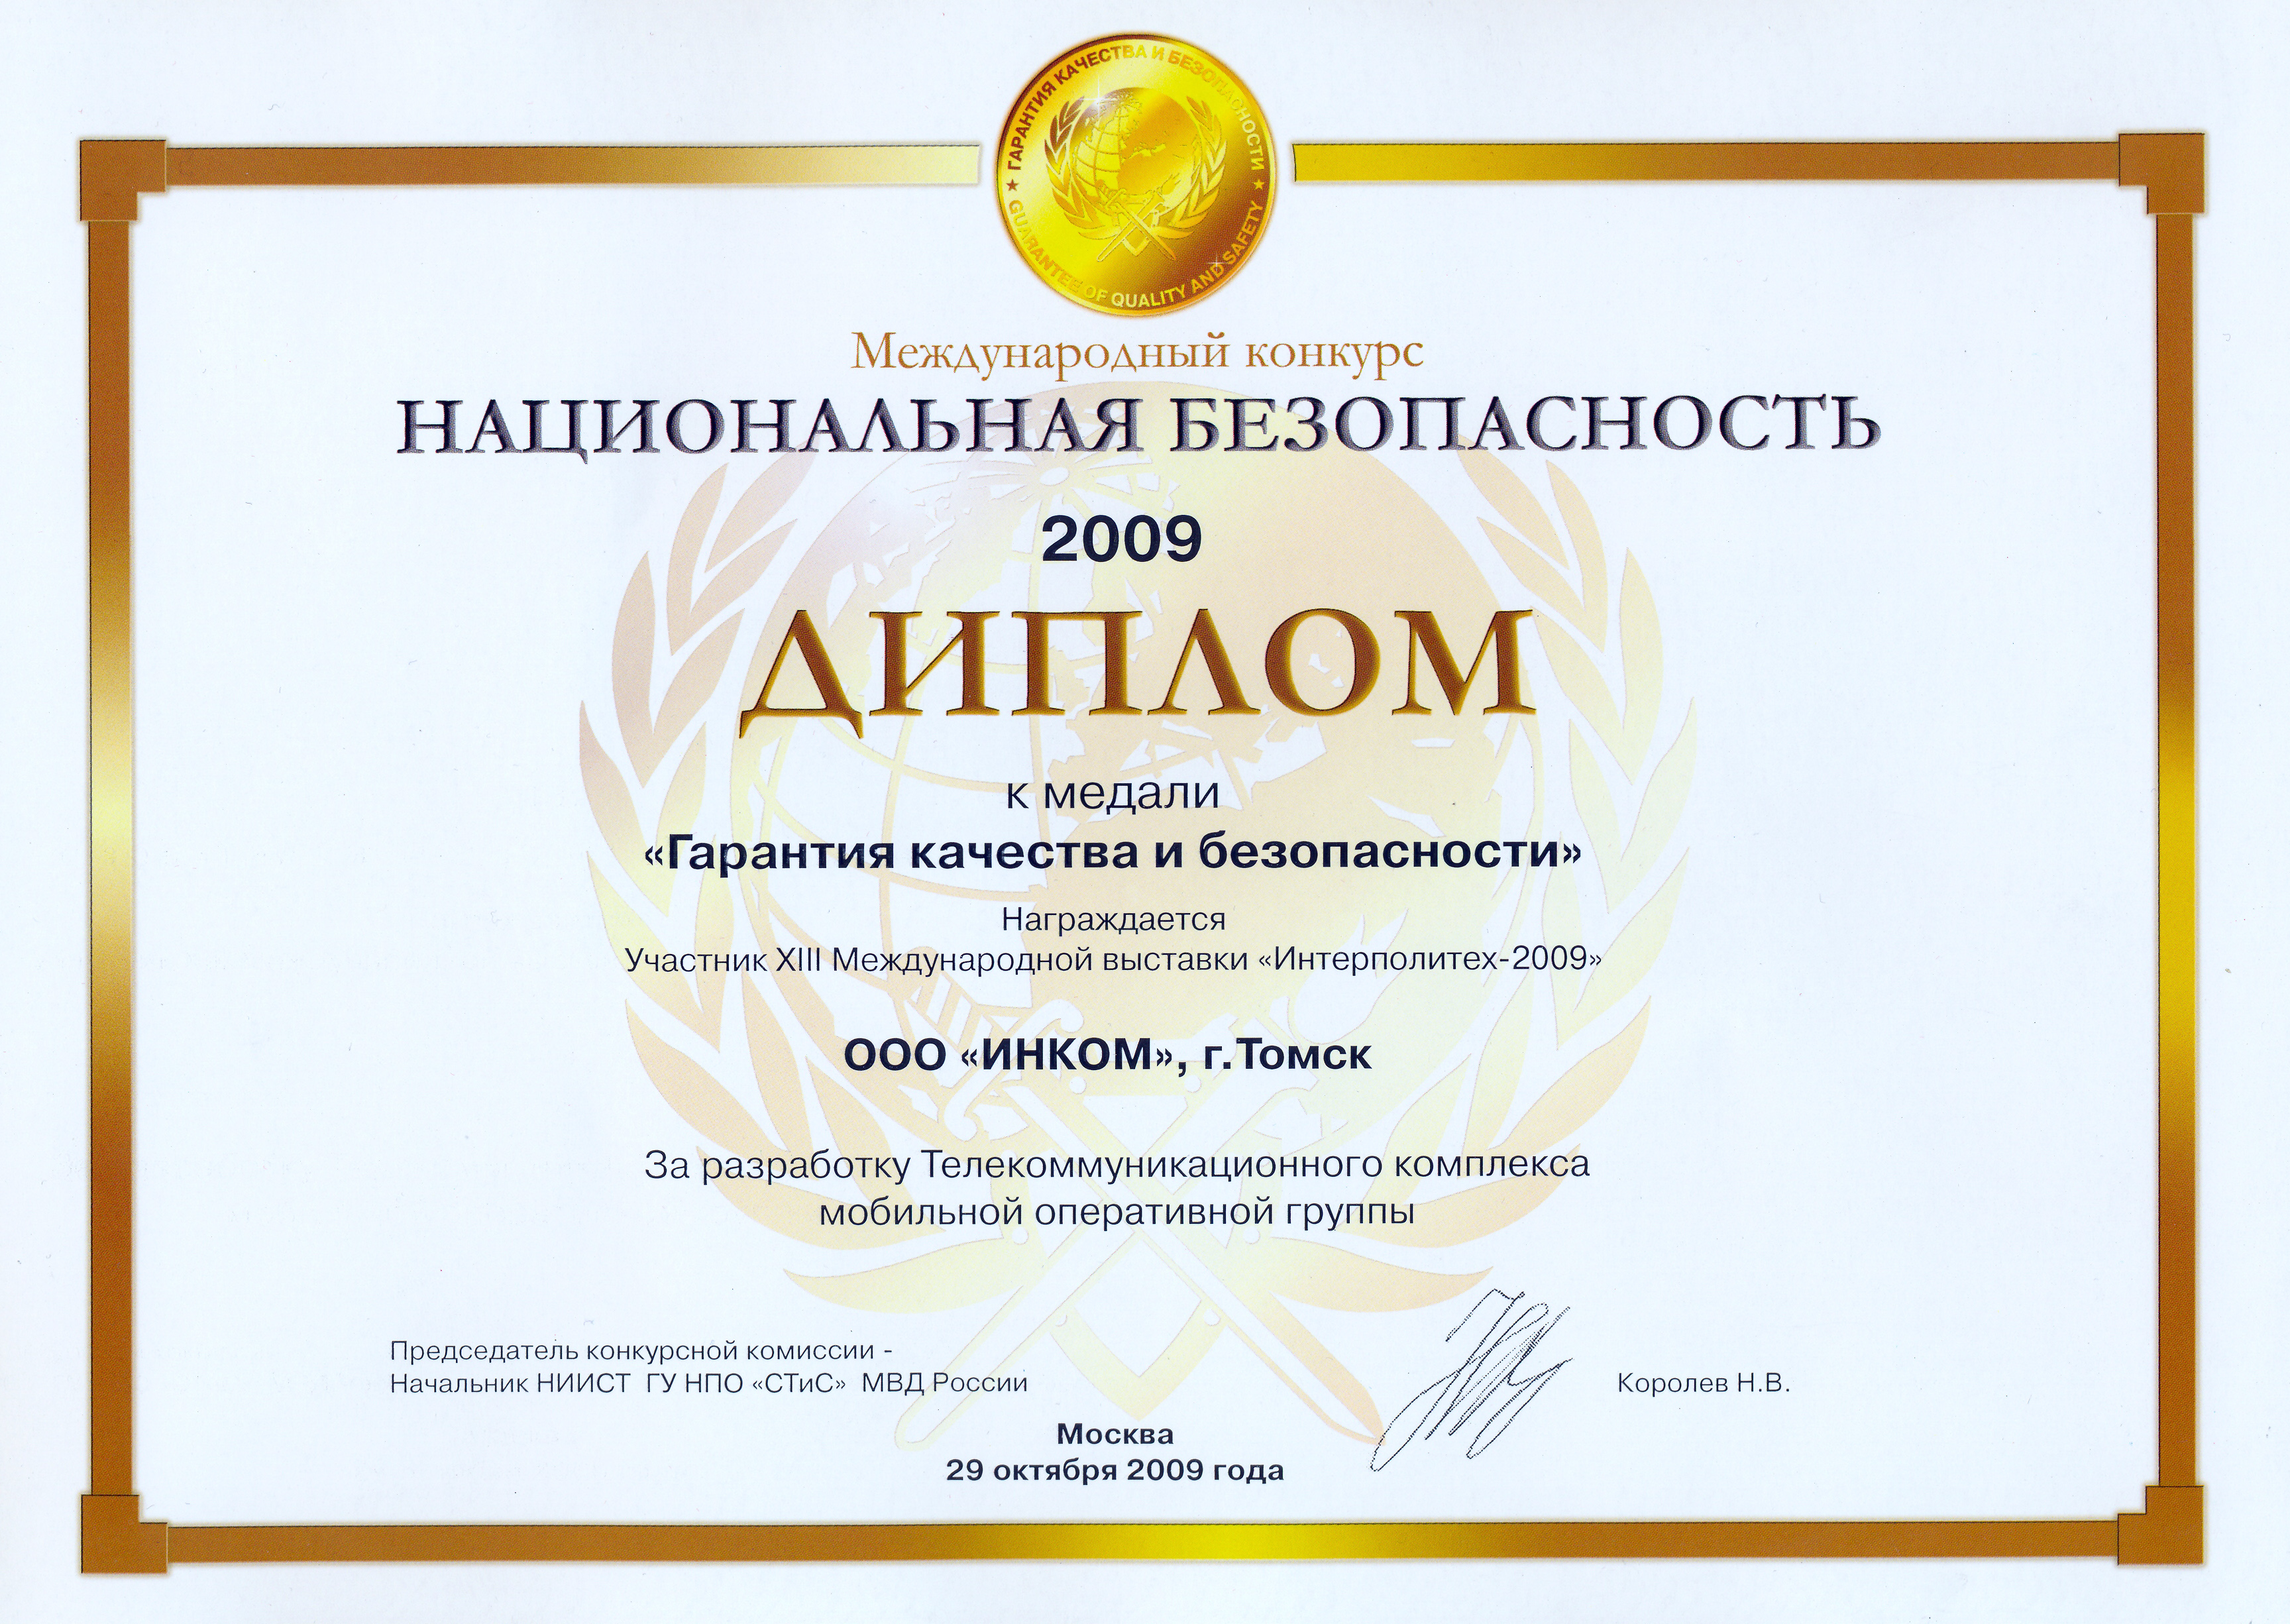 Медаль конкурса "Национальная безопасность" за телекоммуникационный комплекс мобильной оперативной группы